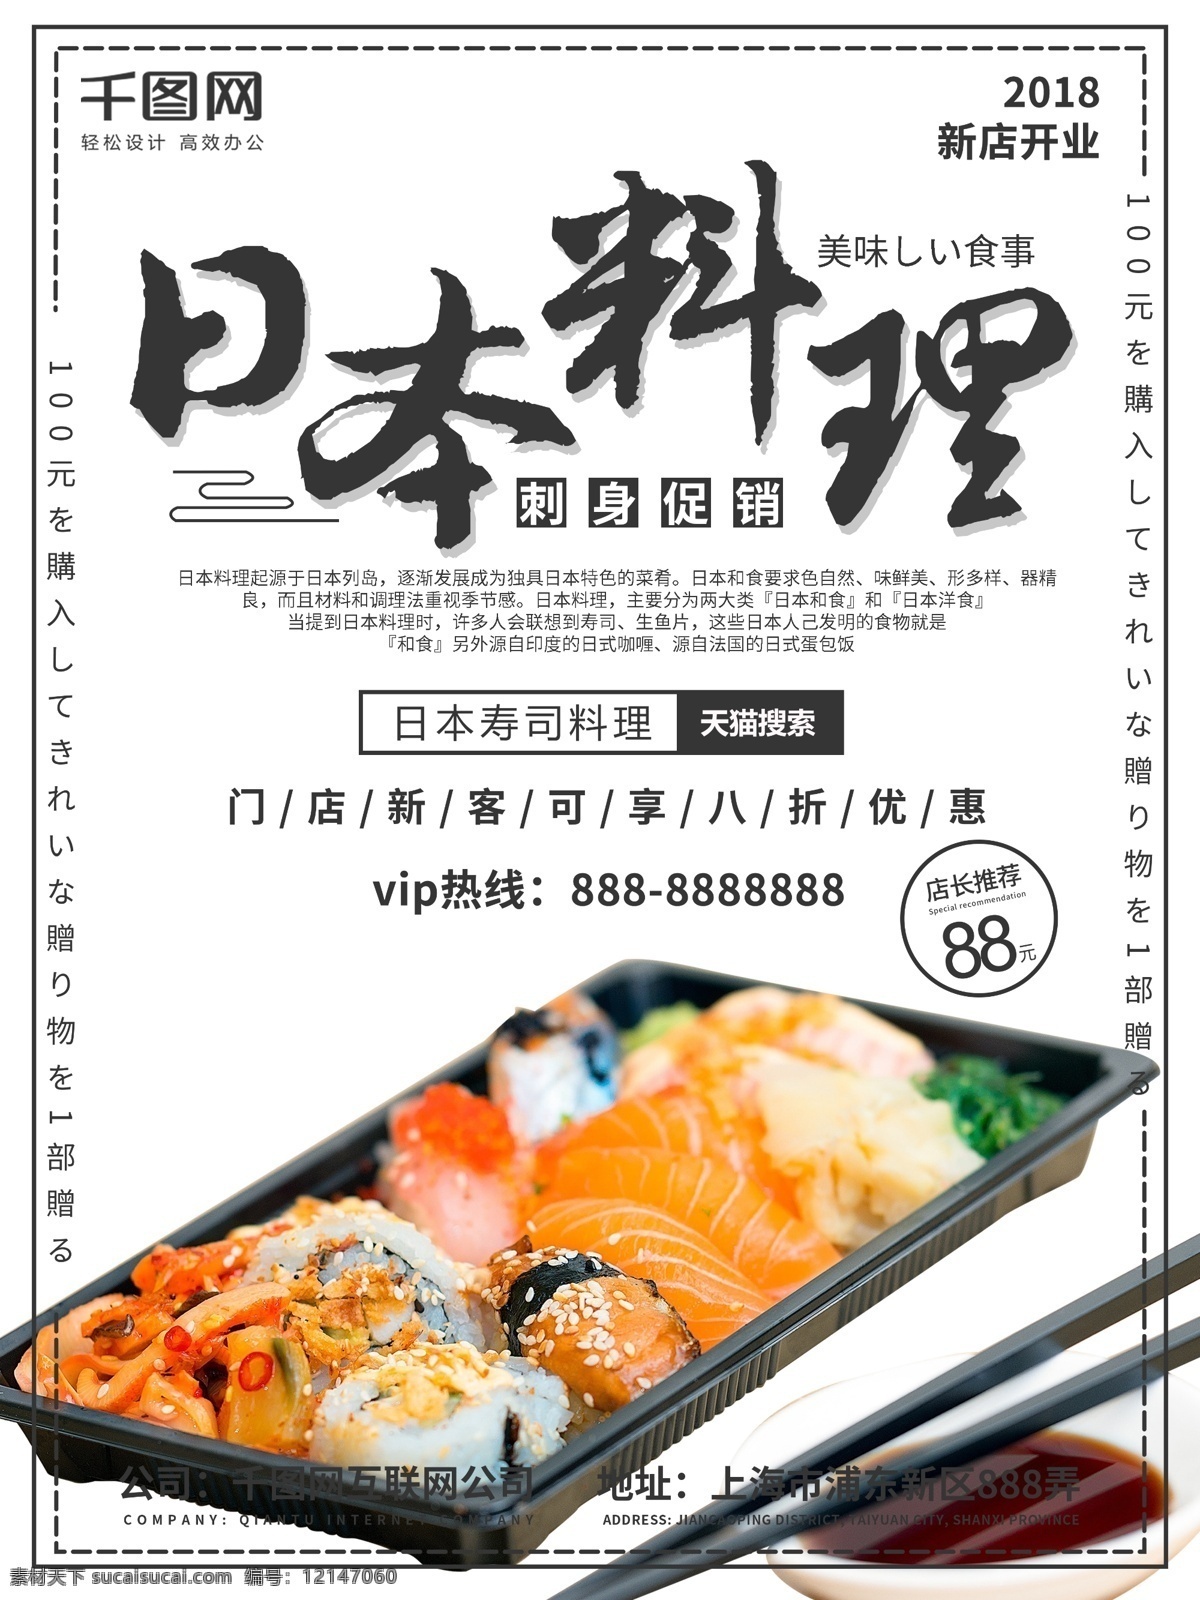 日本 美食 料理 促销 海报 日本料理 刺身 促销海报 美食海报 日本促销海报 料理促销